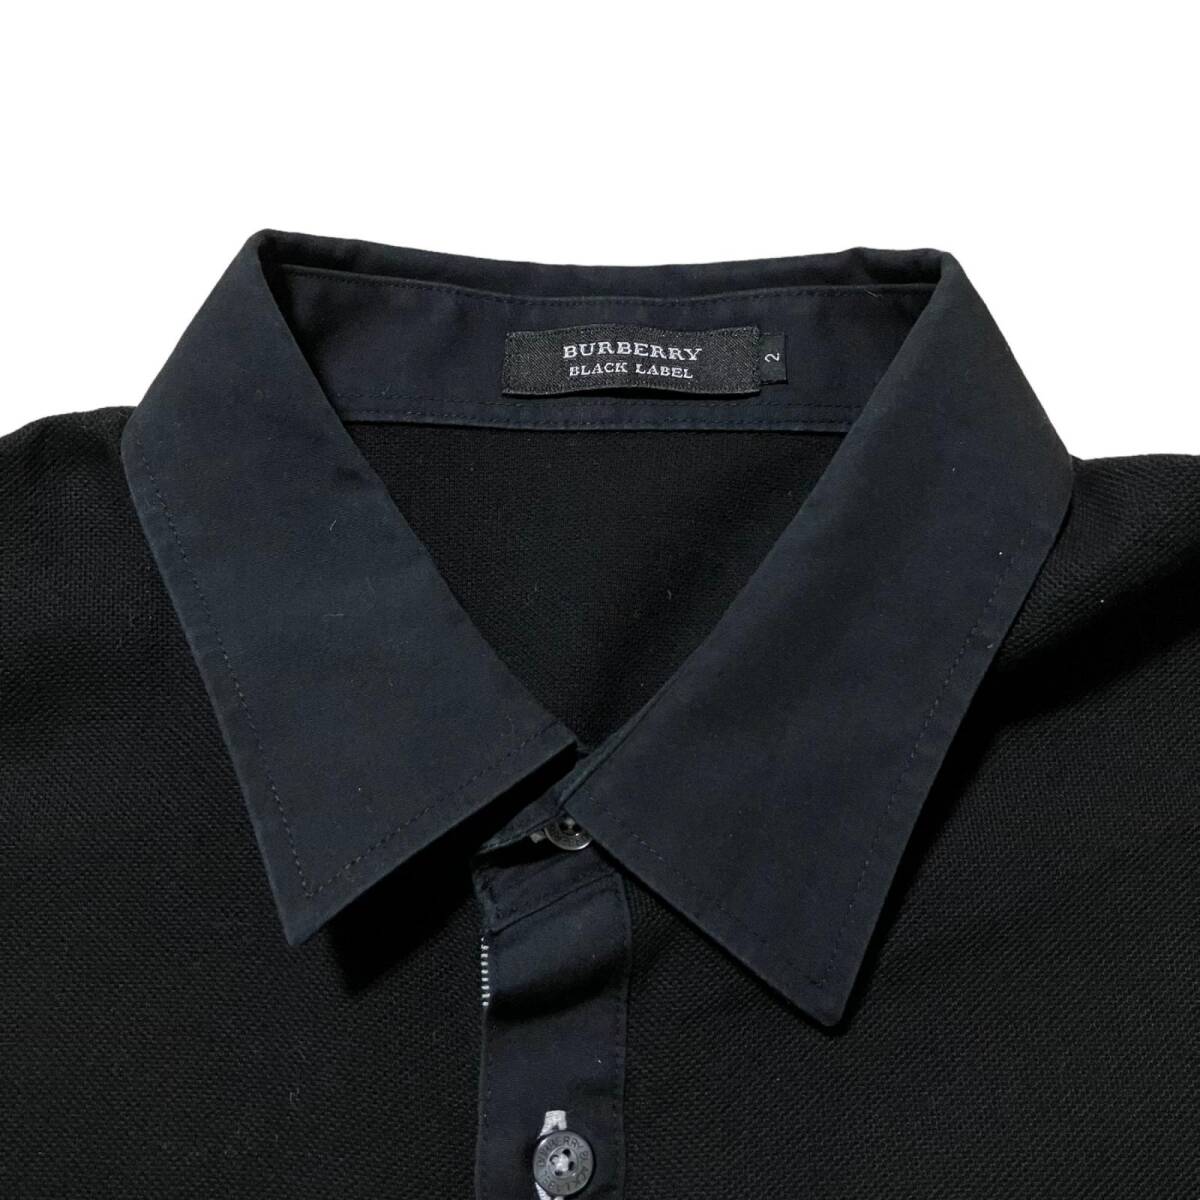 0 бесплатная доставка BURBERRY Burberry рубашка-поло короткий рукав чёрный серия хлопок 100% мужской размер 2